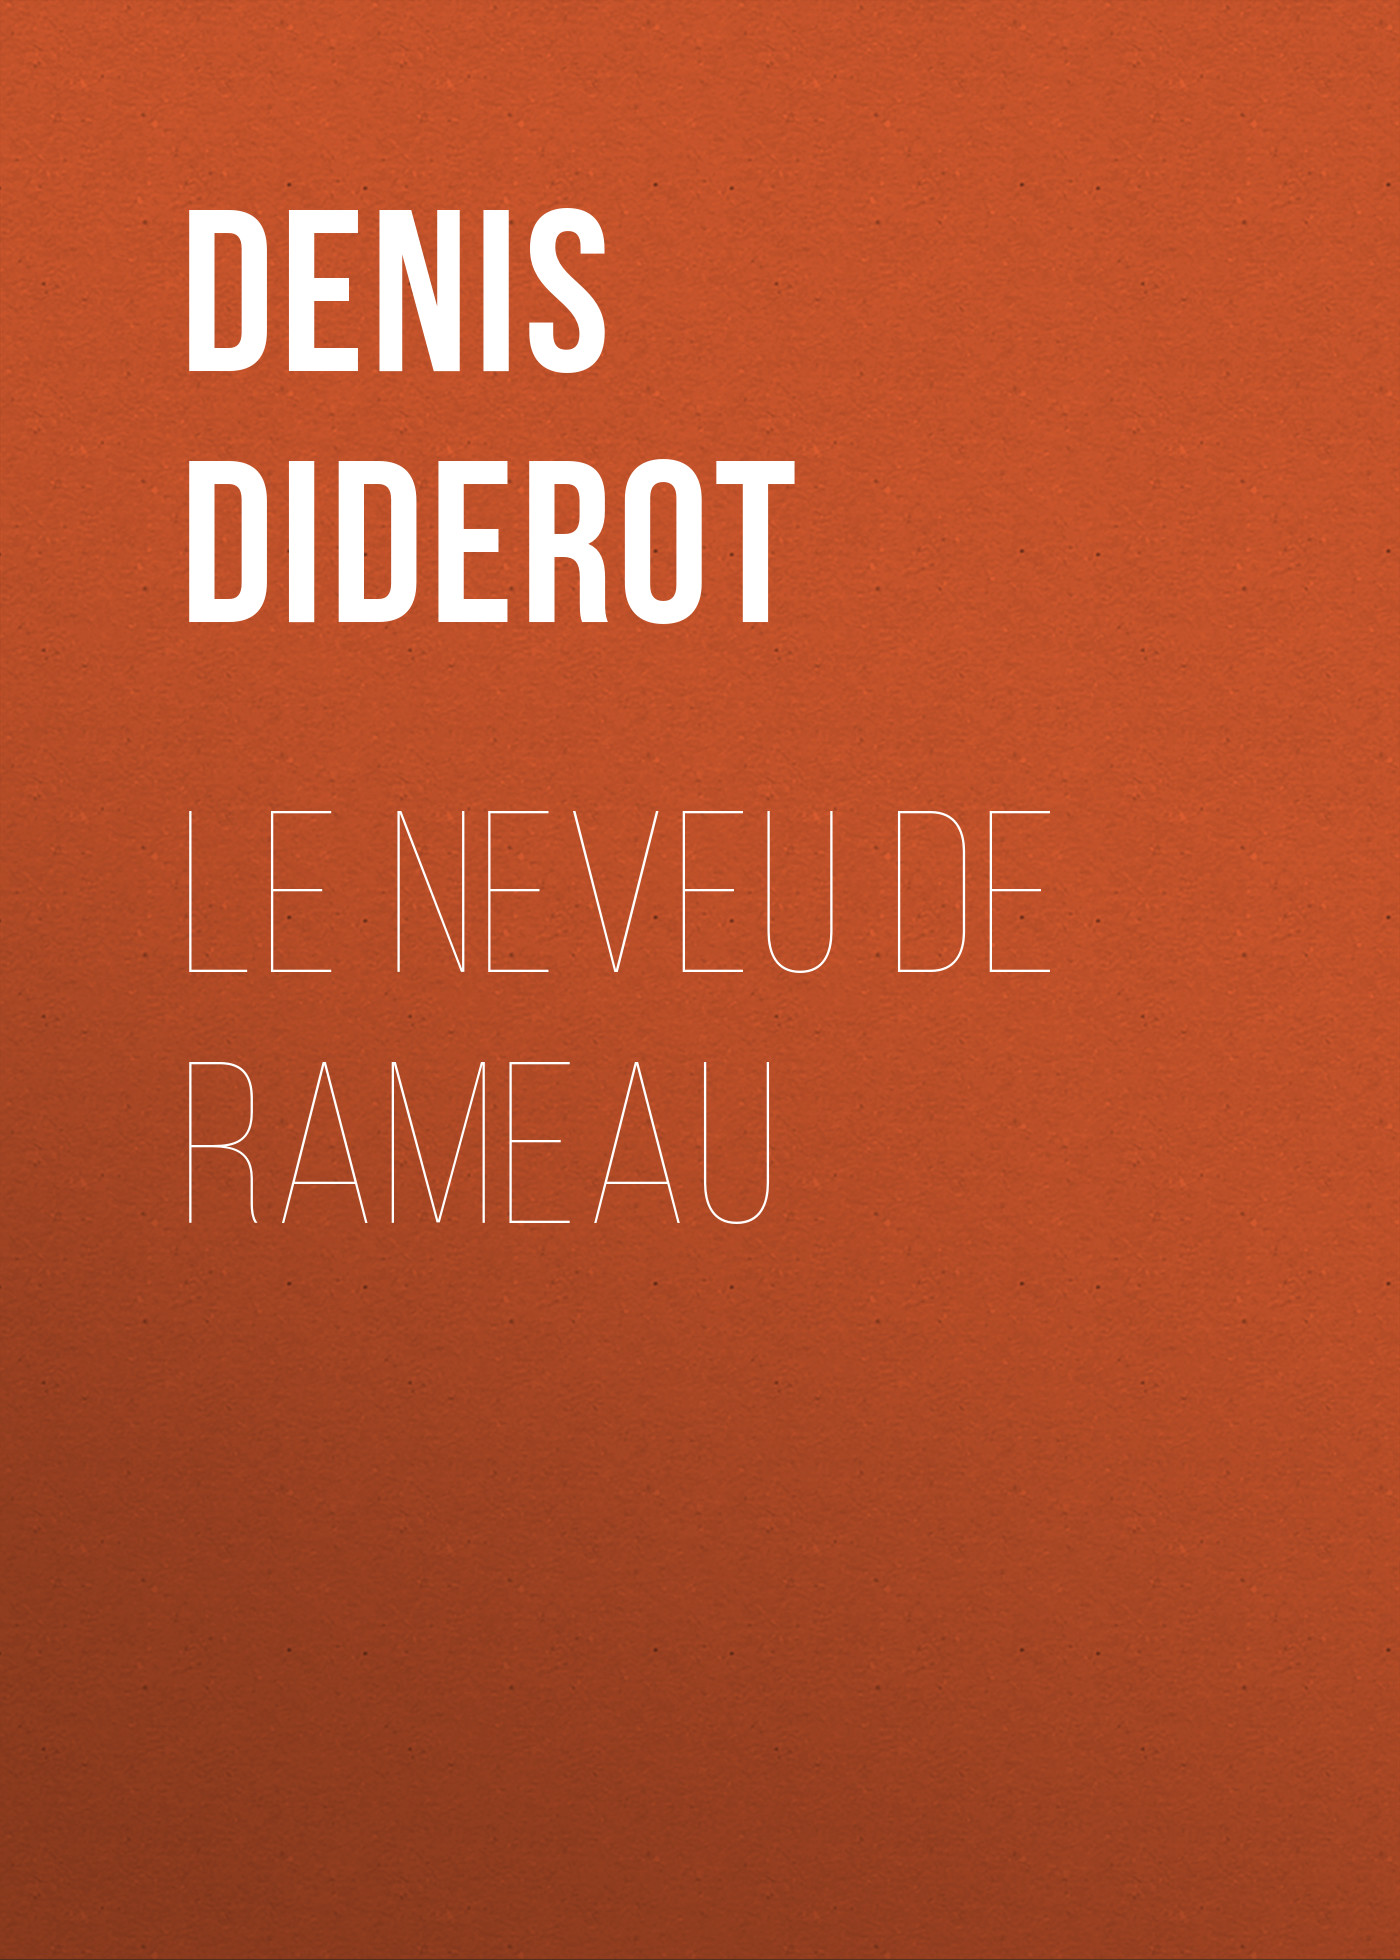 Книга Le neveu de Rameau из серии , созданная Denis Diderot, может относится к жанру Зарубежная старинная литература, Зарубежная классика. Стоимость электронной книги Le neveu de Rameau с идентификатором 25092300 составляет 0 руб.